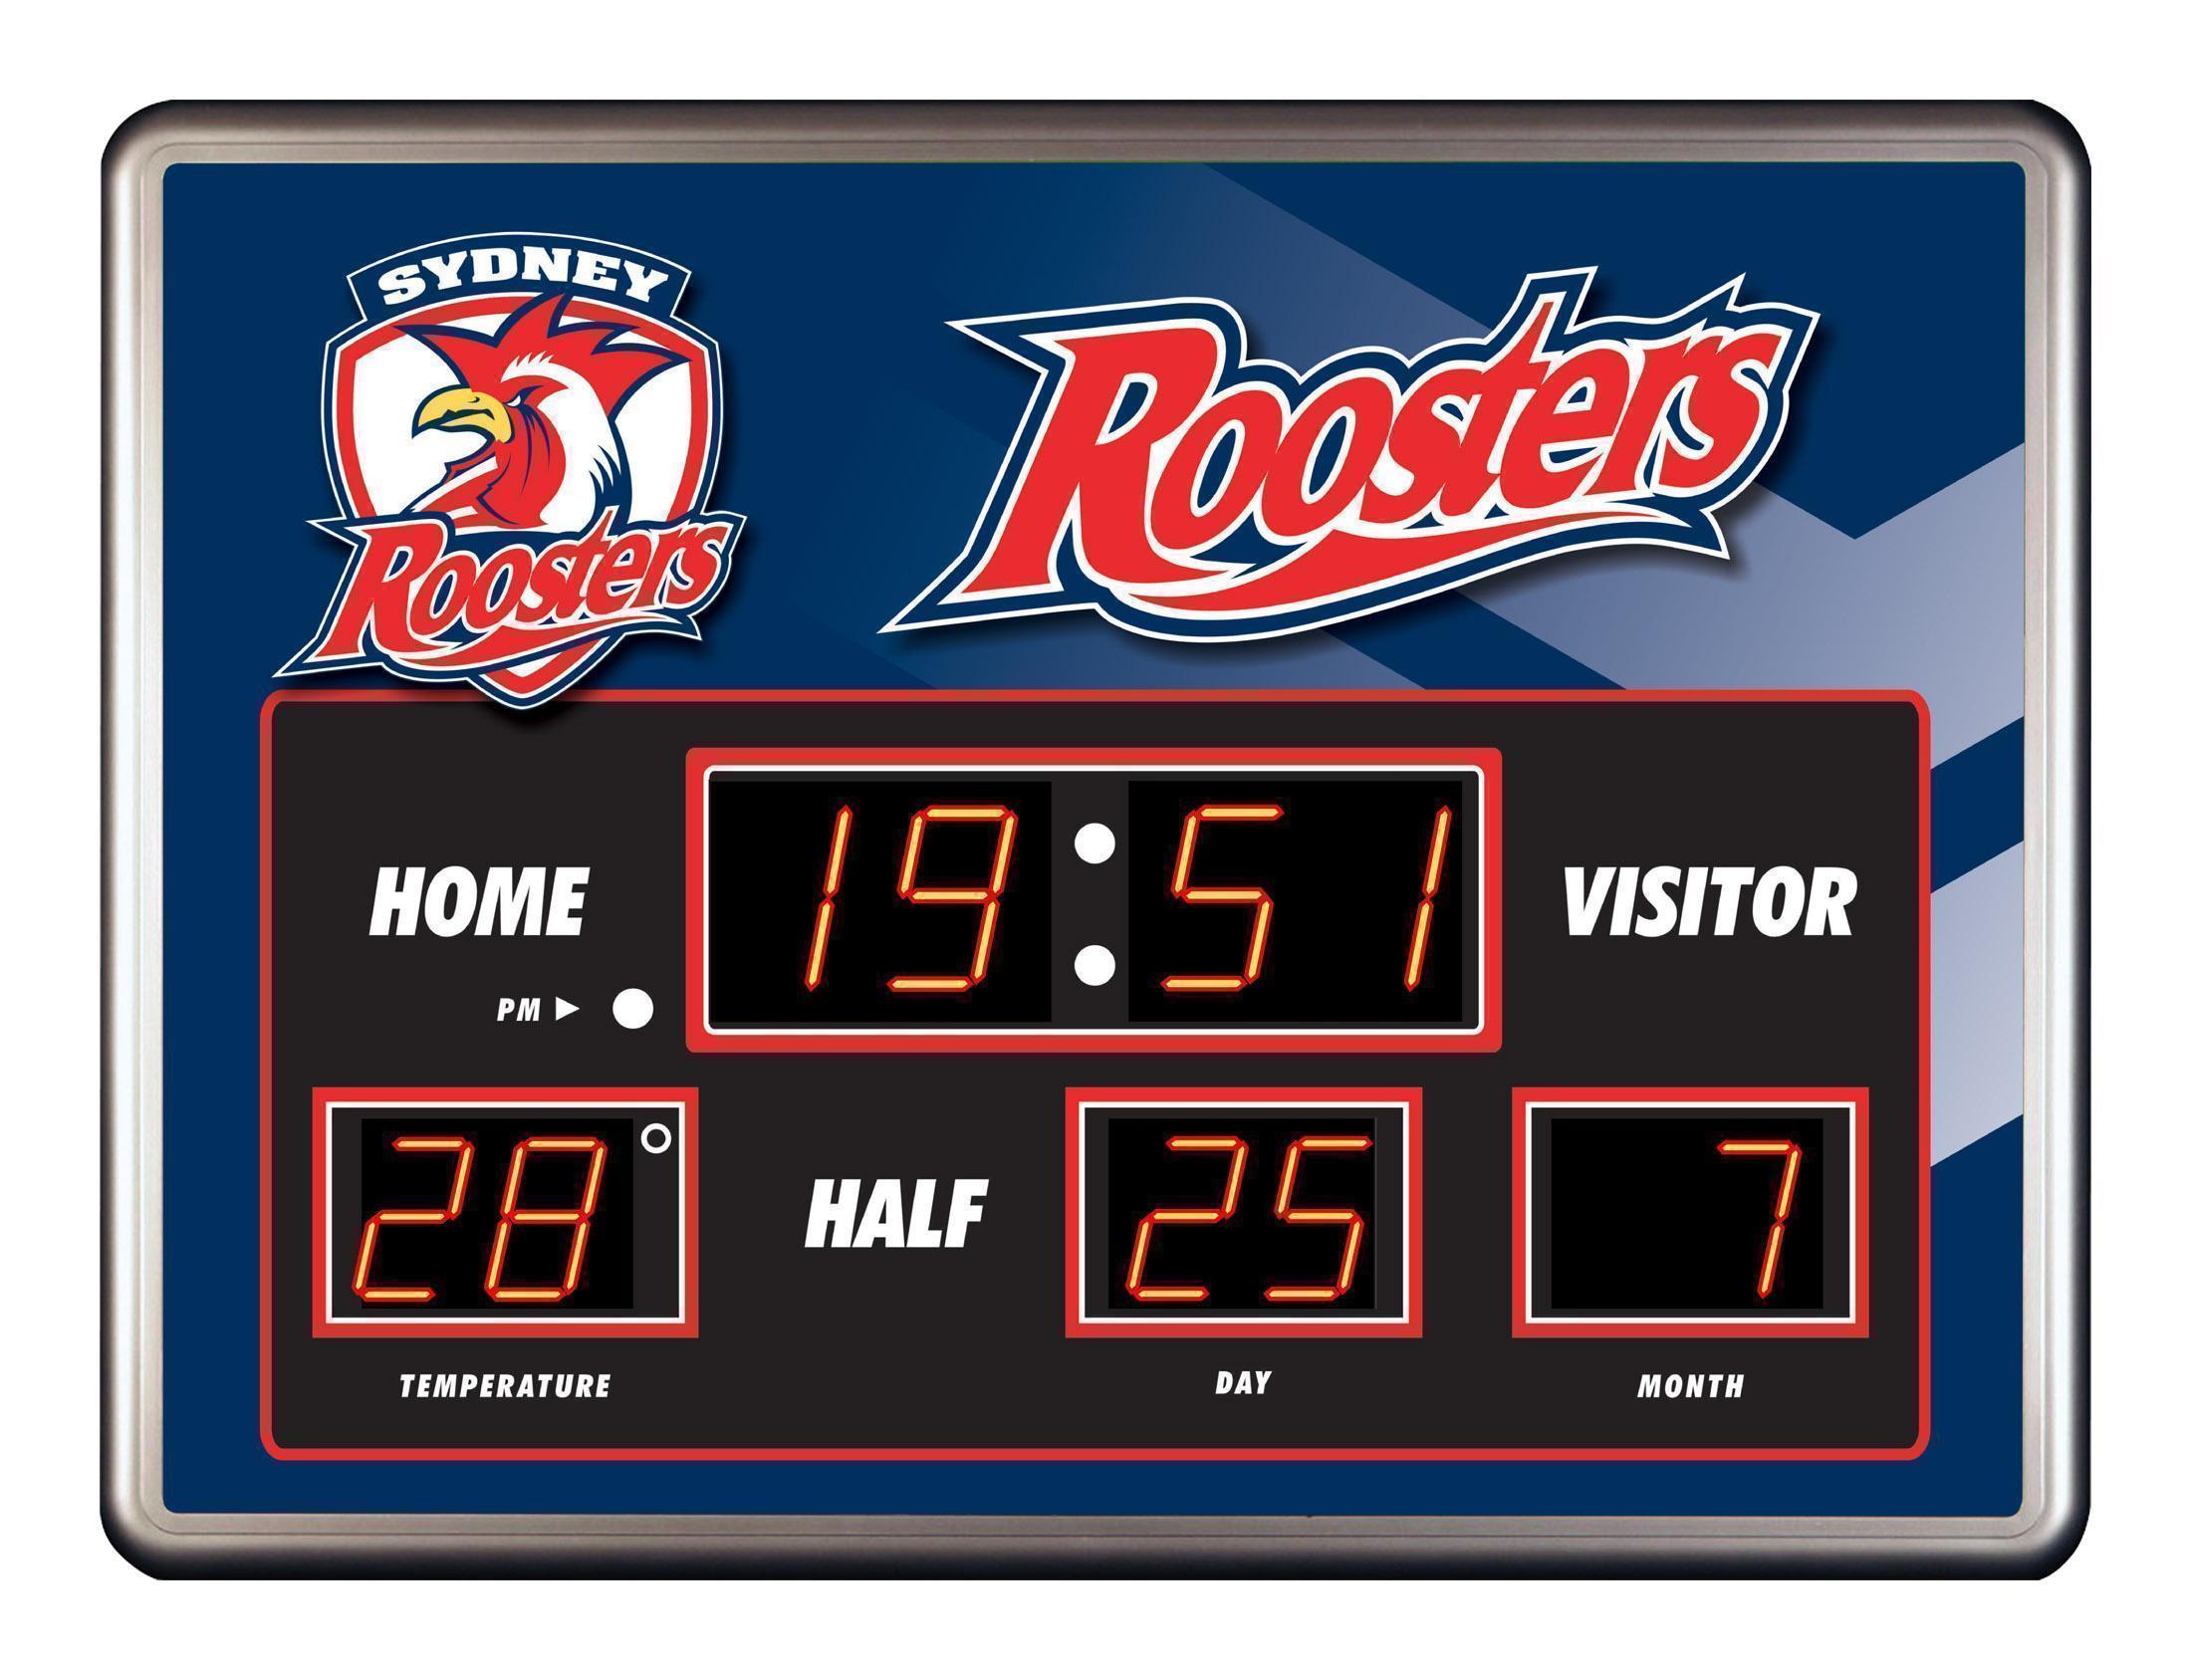 Sydney Roosters Scoreboard Clock 